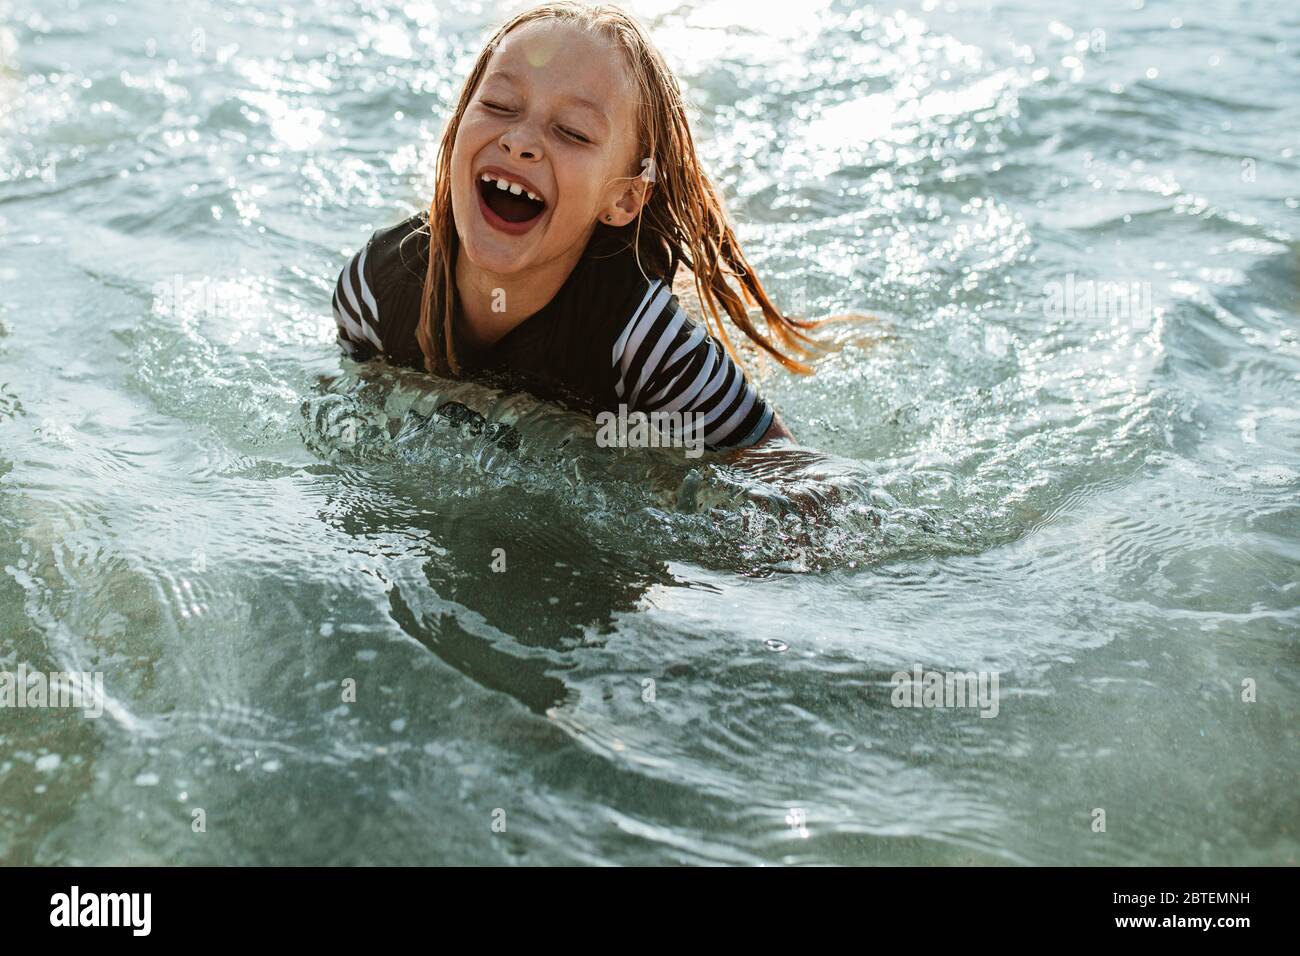 Chica emocionada disfrutando nadando en el agua del mar. Niña sentada en agua de mar y sonriendo. Foto de stock